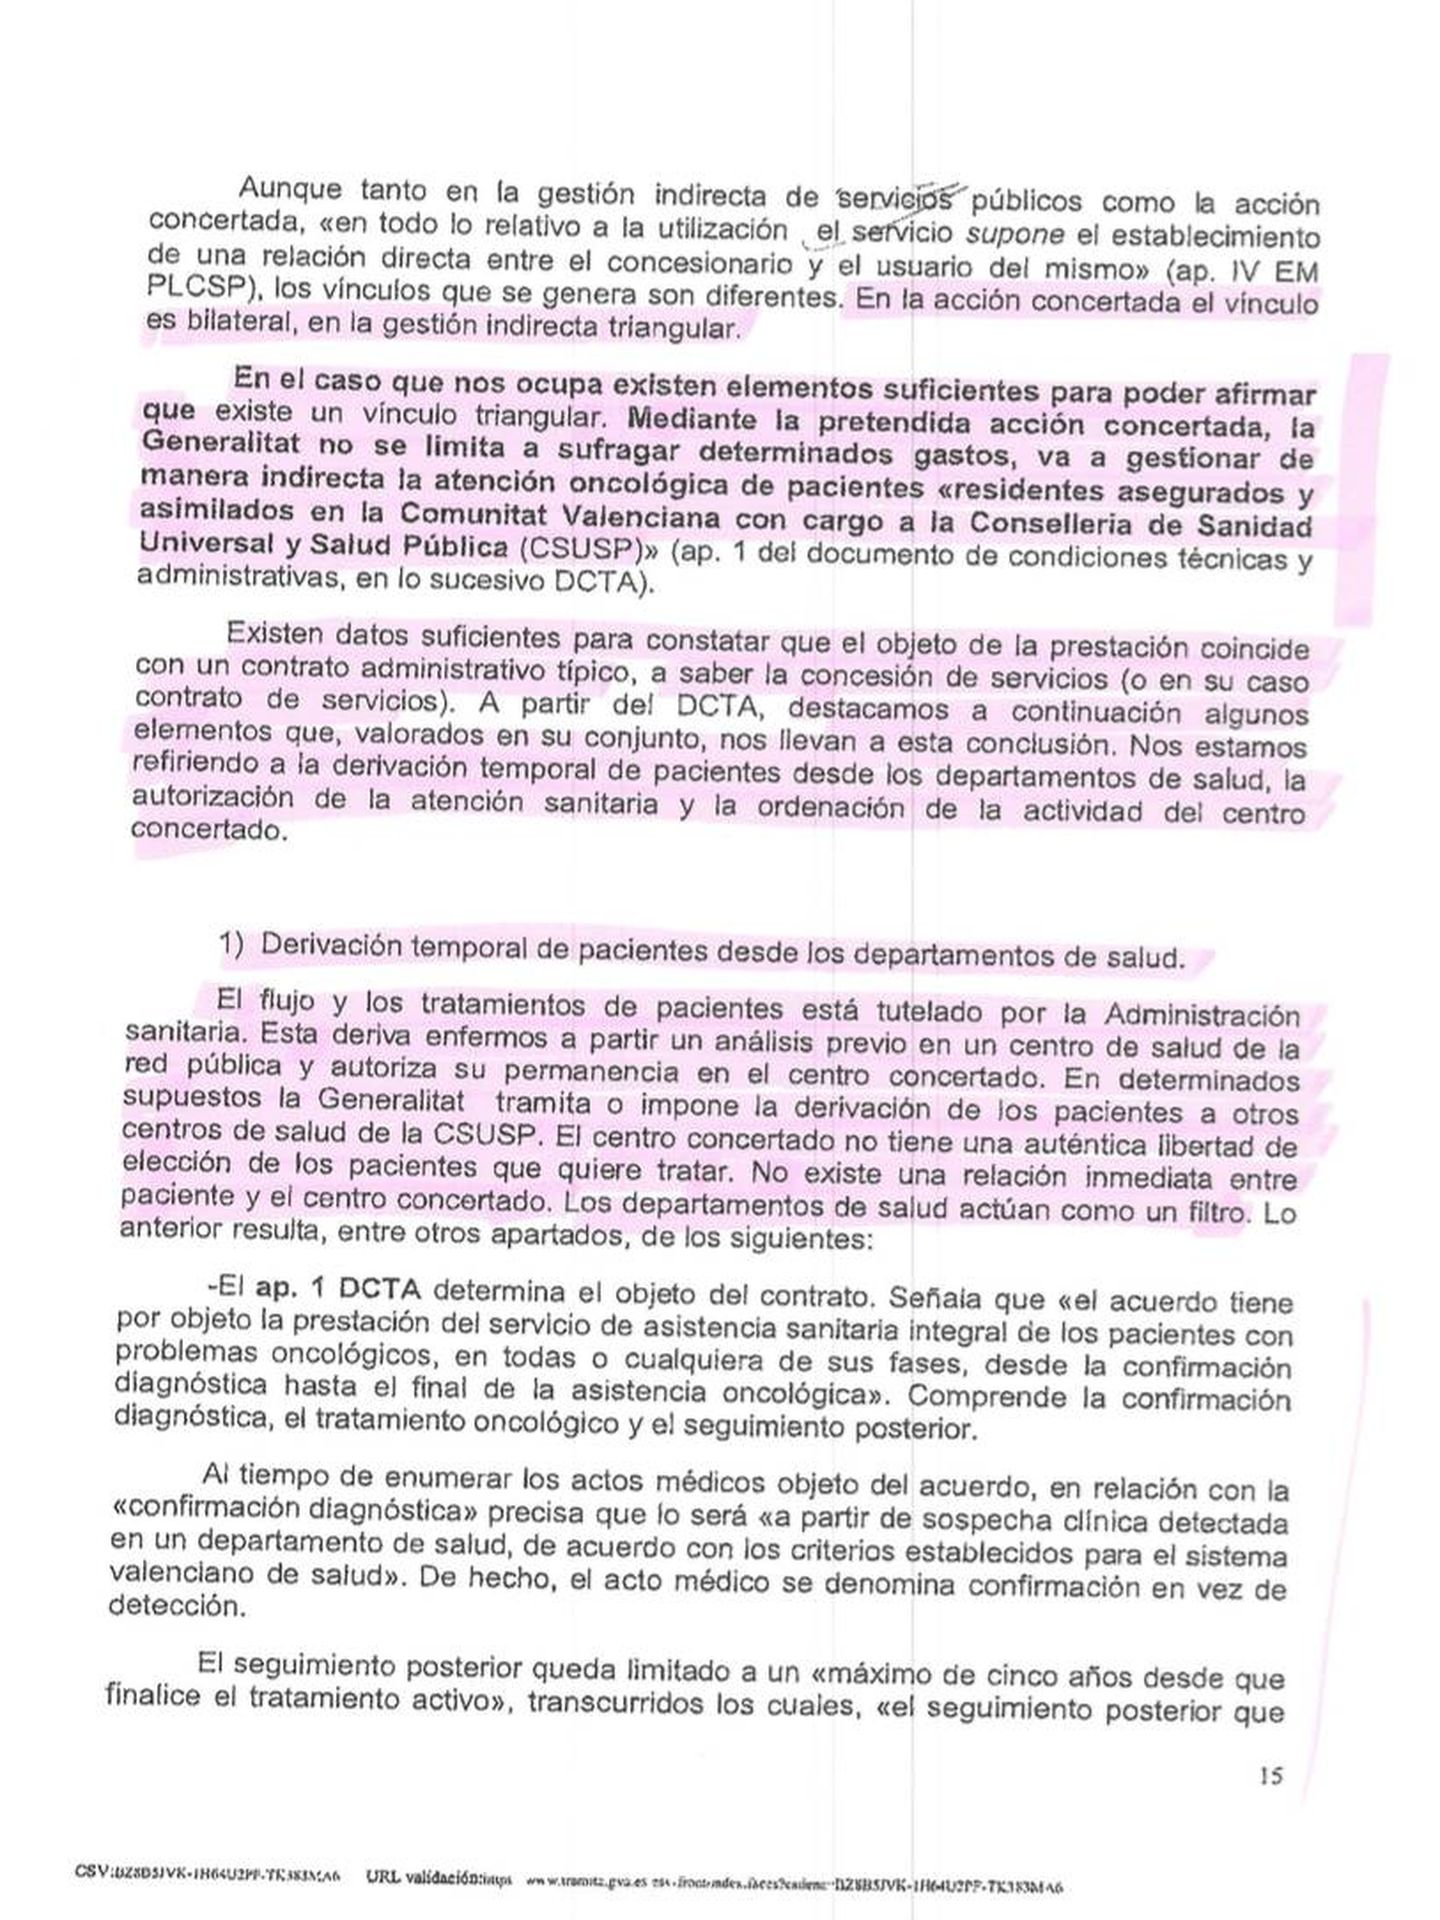 Fragmento del informe de la Abogacía de la Generalitat. (Pinche para ampliar)